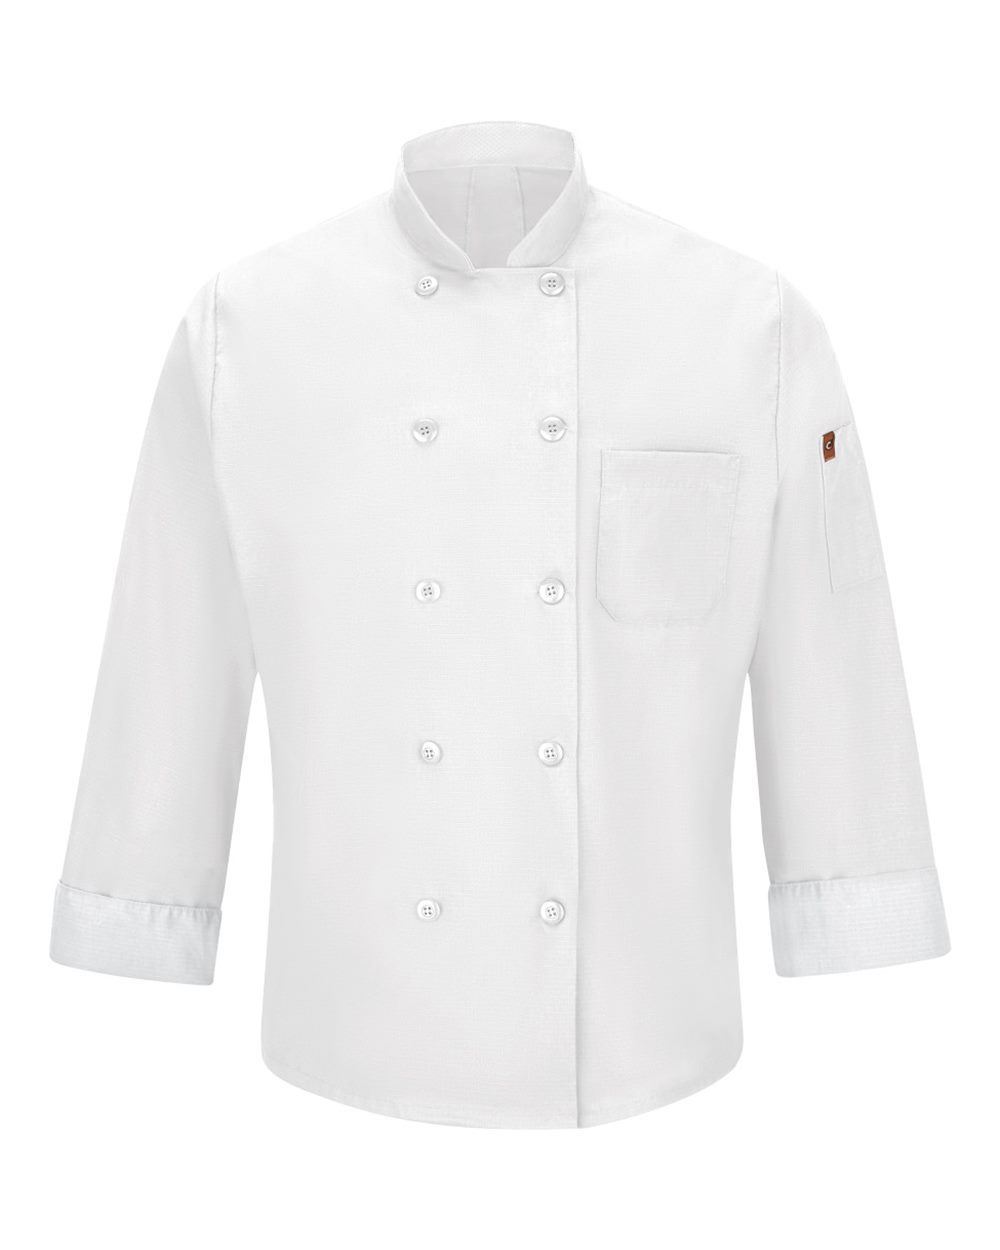 Mimix™ Chef Coat with OilBlok-